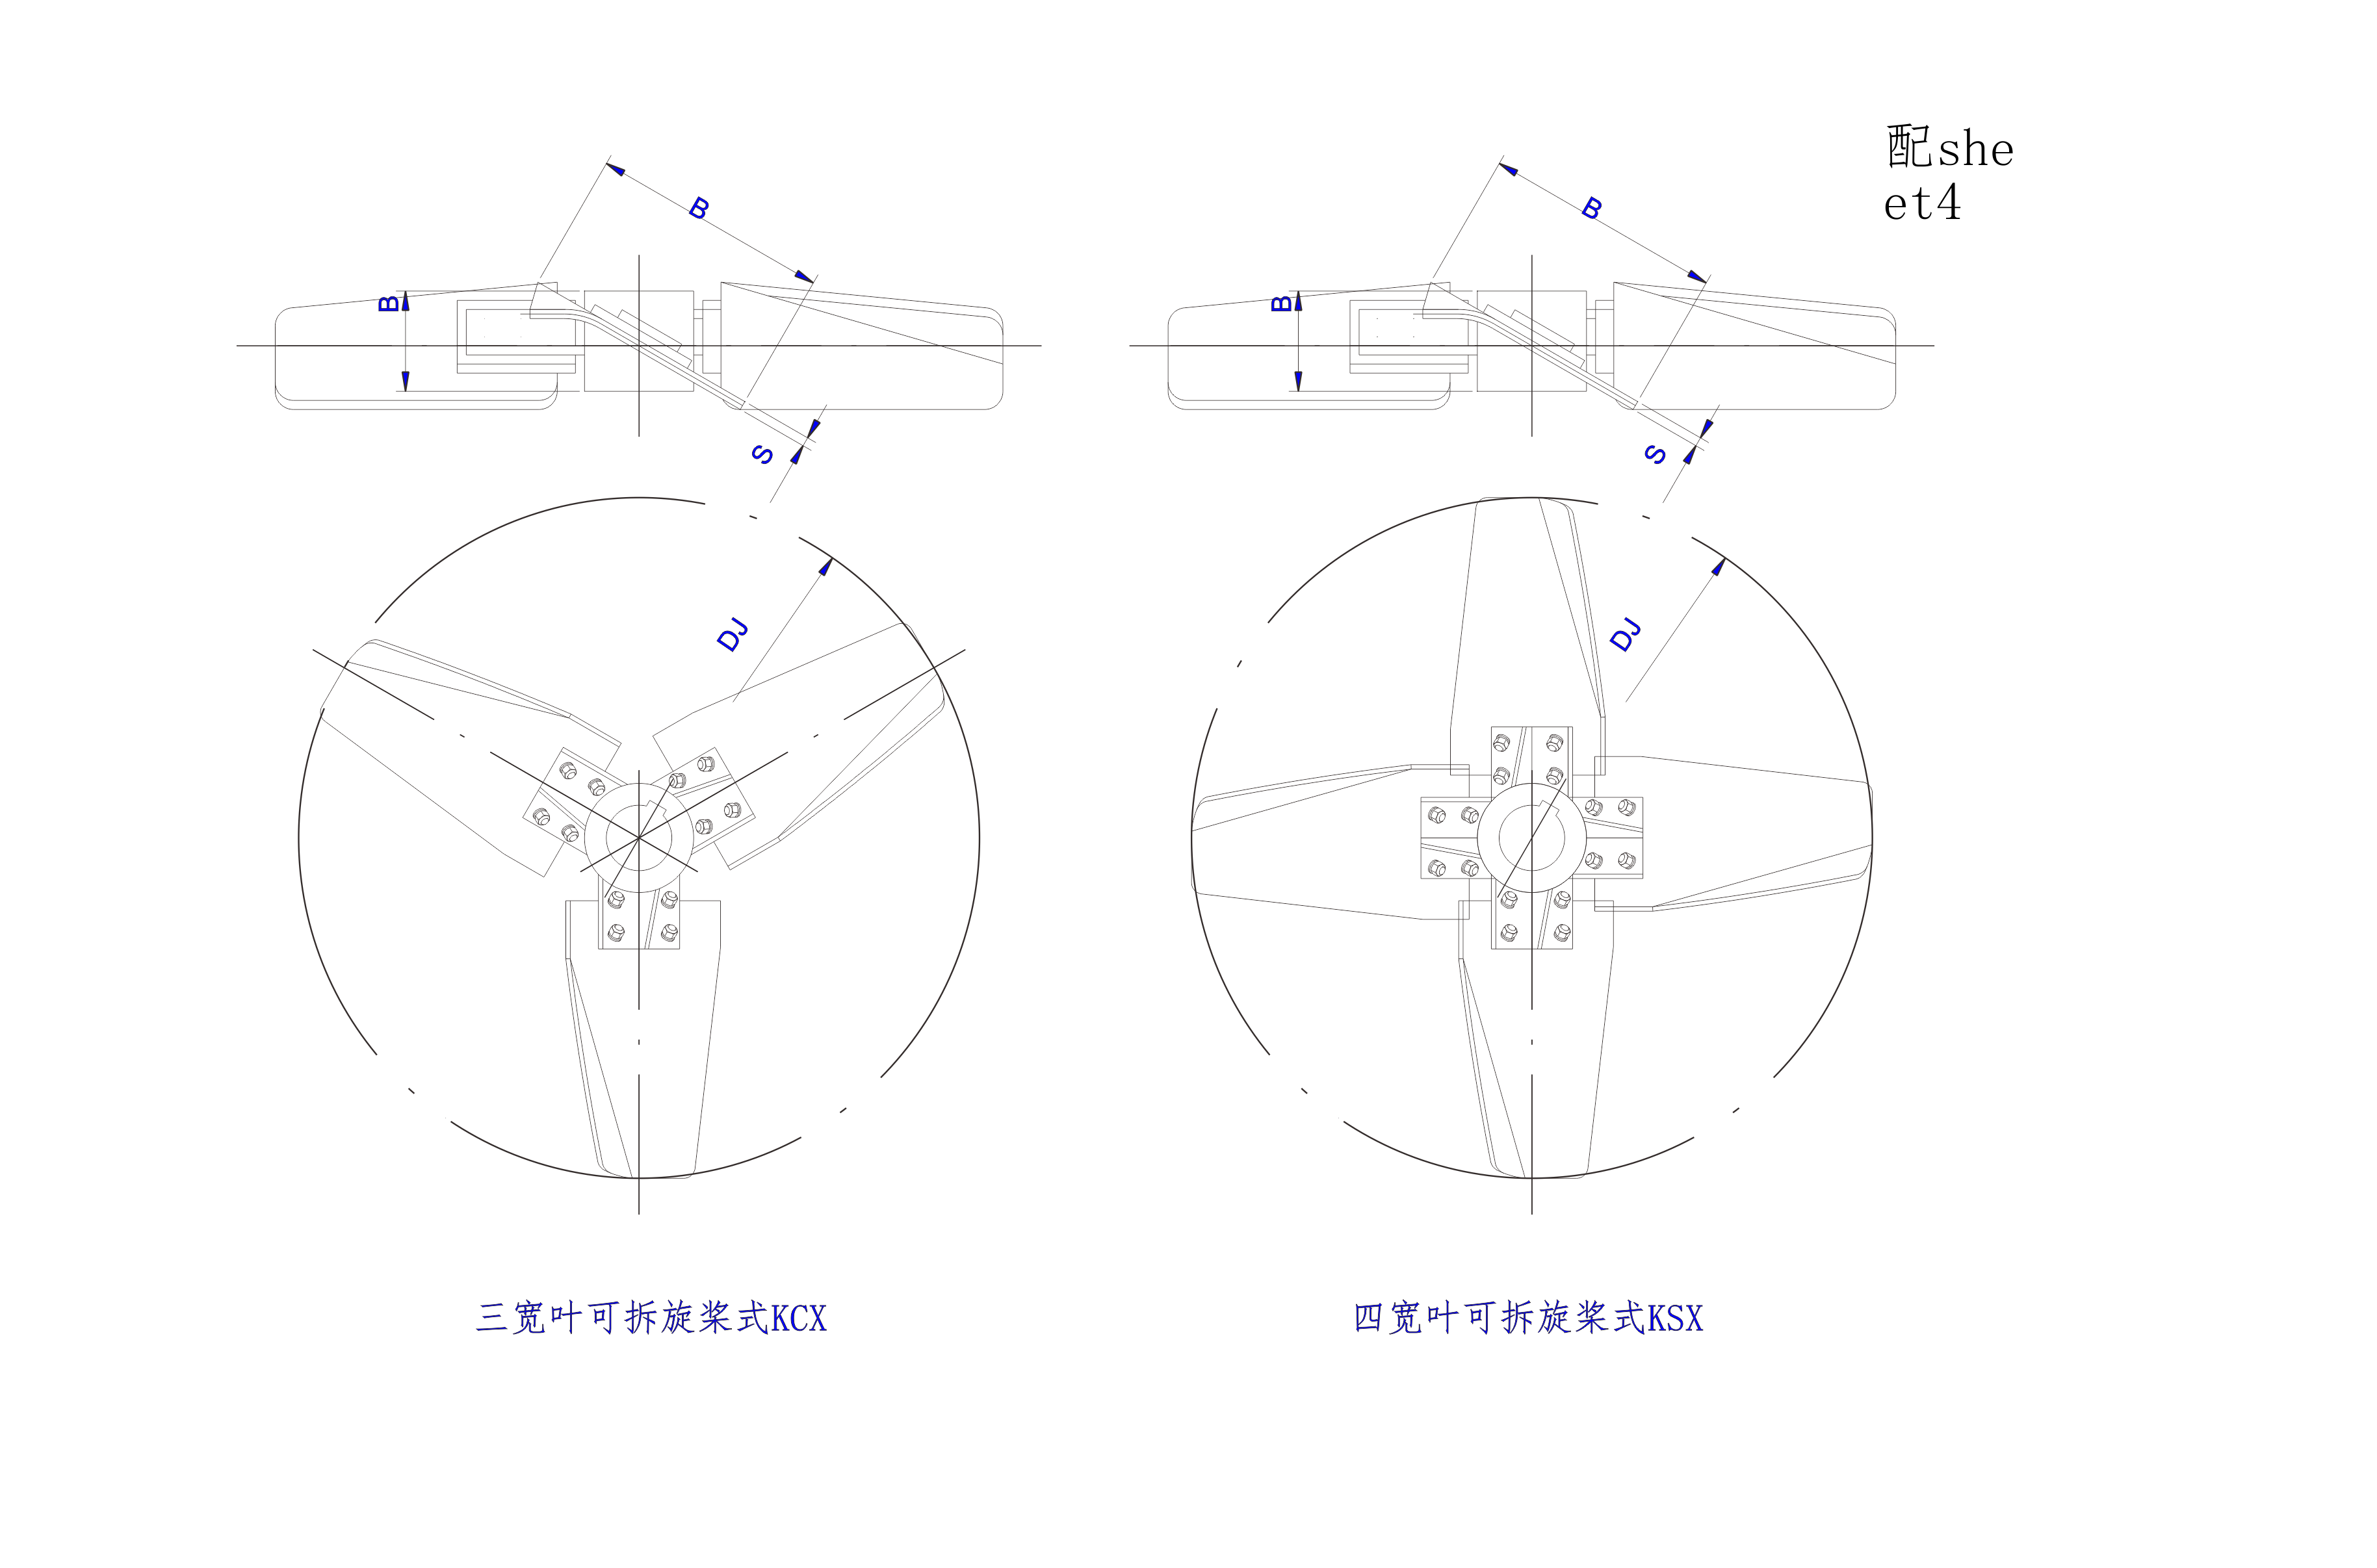   三宽叶,四宽叶旋桨式搅拌器设计图